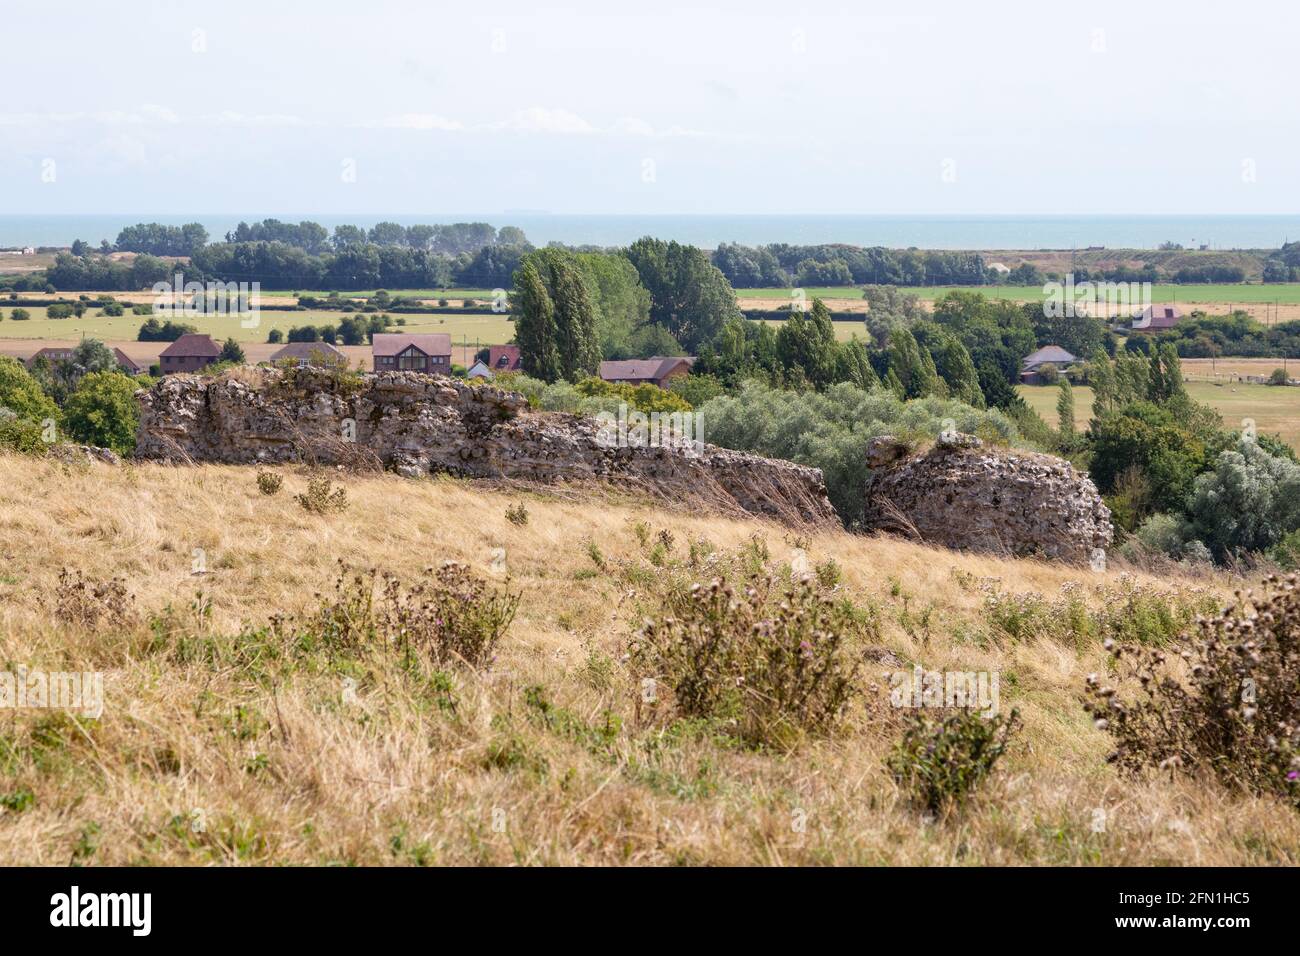 Ruines romaines du château de Stutfall, Lympne, kent, royaume-uni Banque D'Images